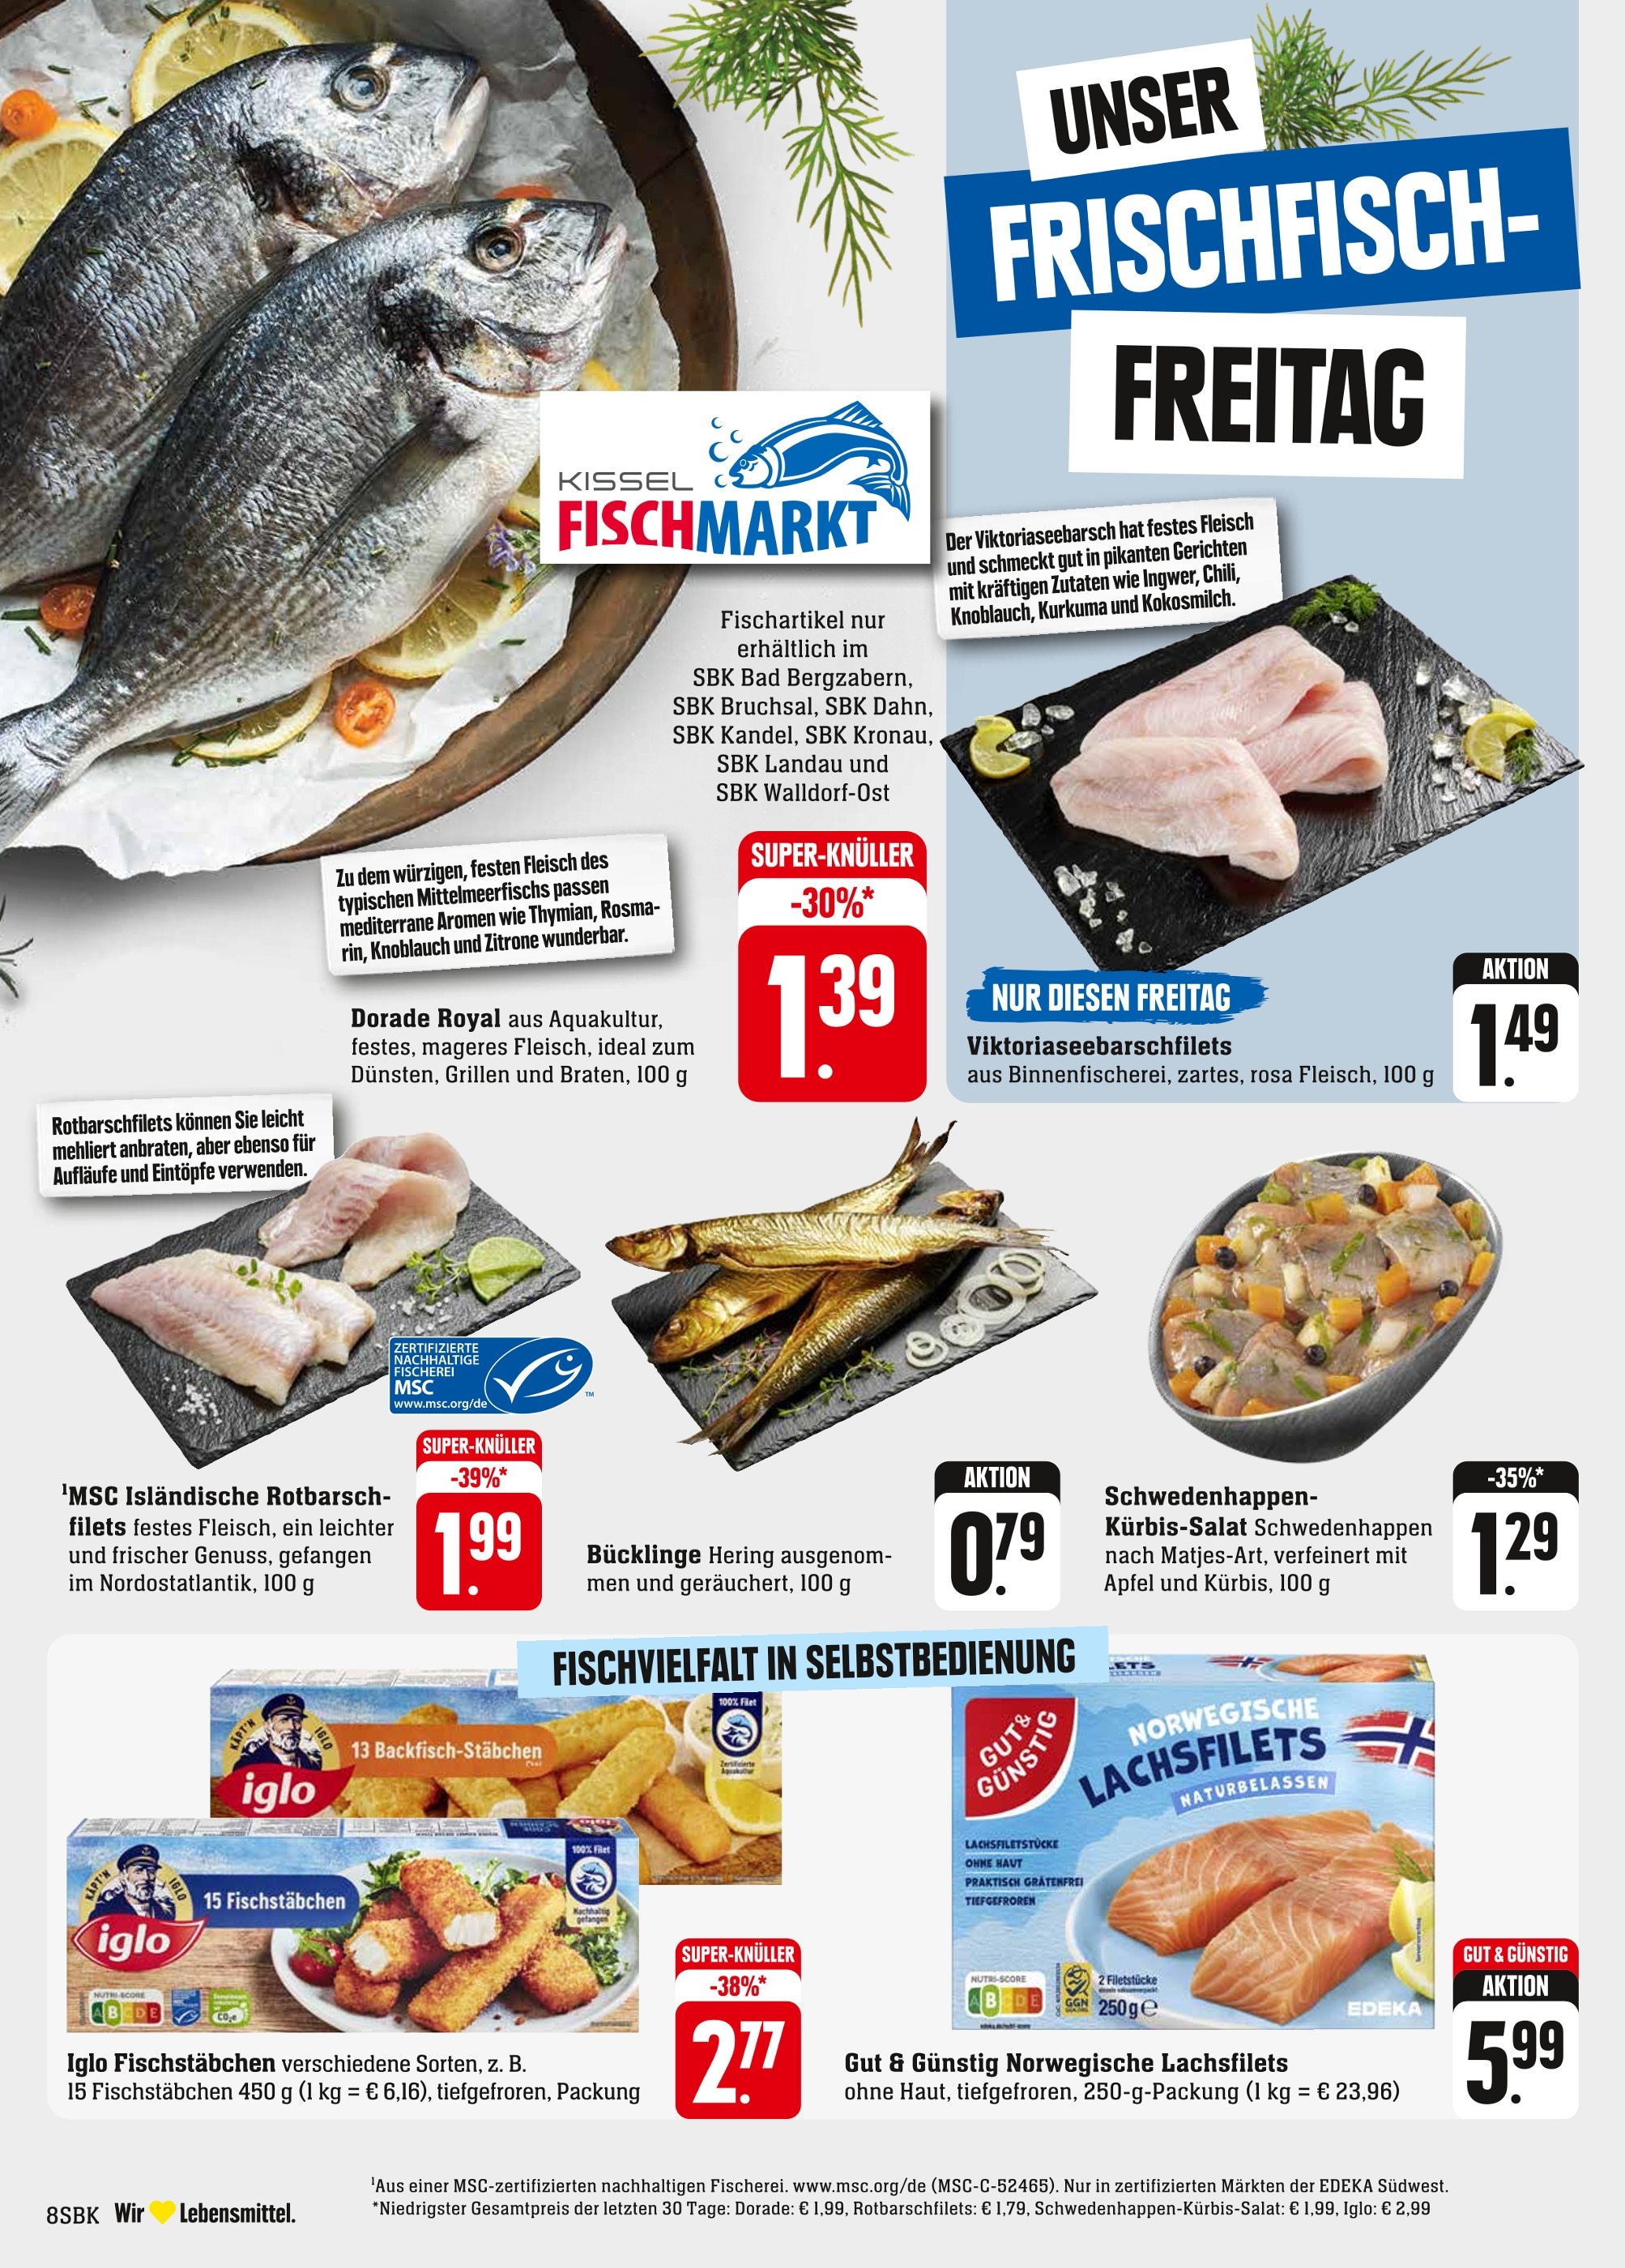 Fisch kaufen Pirmasens günstige in - Pirmasens in Angebote